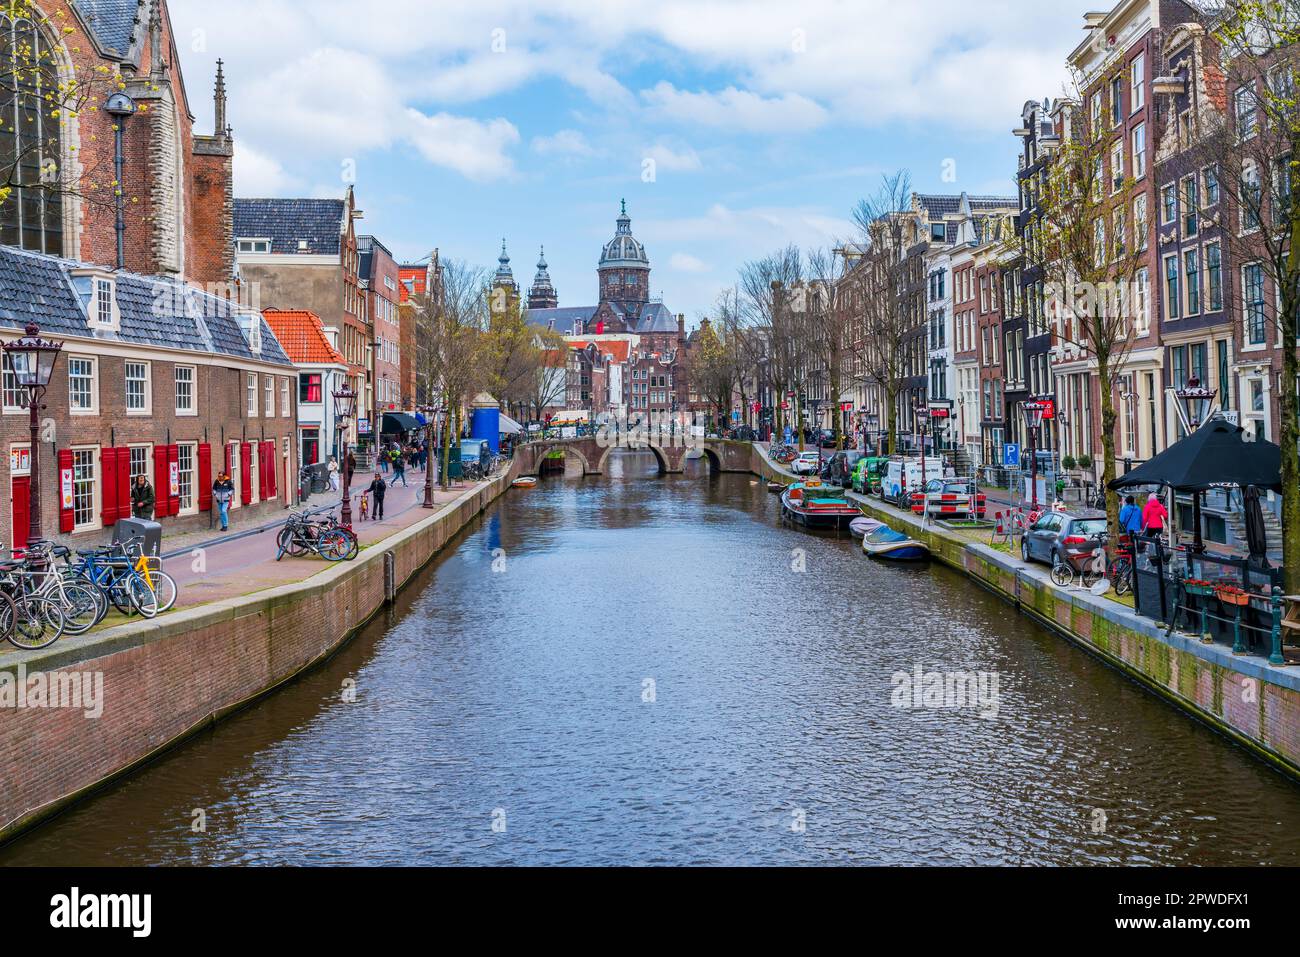 AMSTERDAM, HOLLAND - 18. APRIL 2023: Blick auf einen Kanal in Amsterdam, niederländische Hauptstadt, bekannt für sein aufwändiges Kanalsystem, enge Häuser und Radfahren Stockfoto